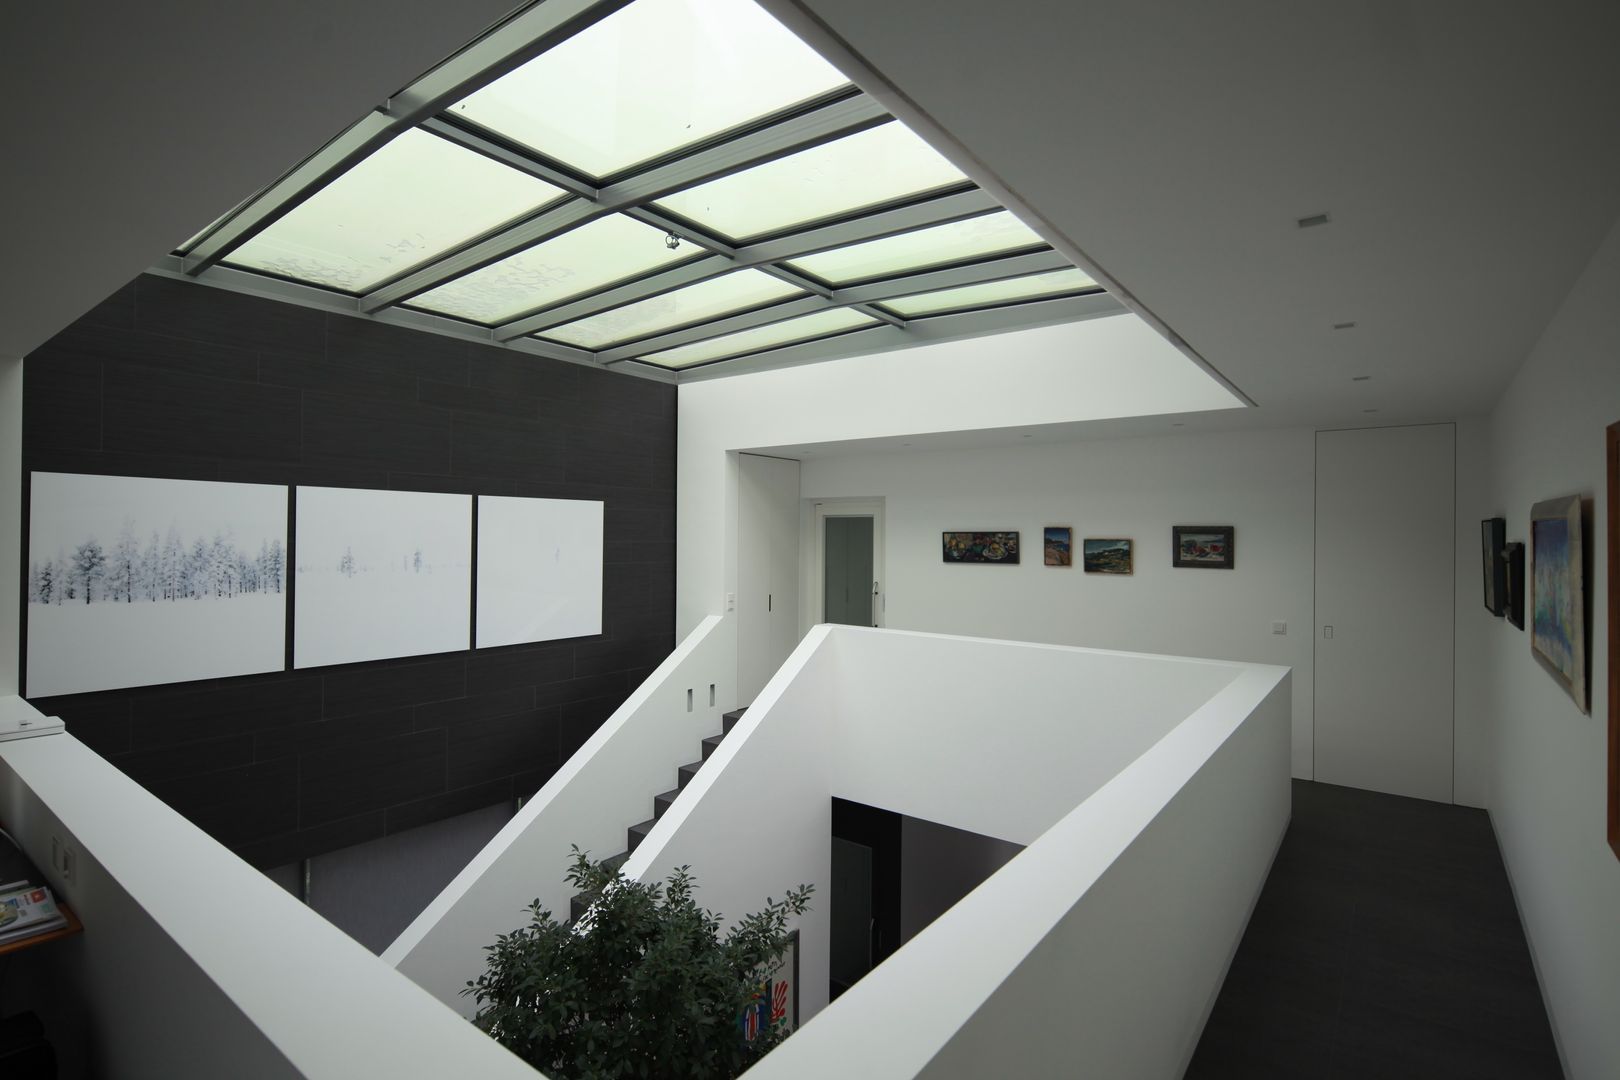 Anwesen in Freising, Herzog-Architektur Herzog-Architektur モダンスタイルの 玄関&廊下&階段